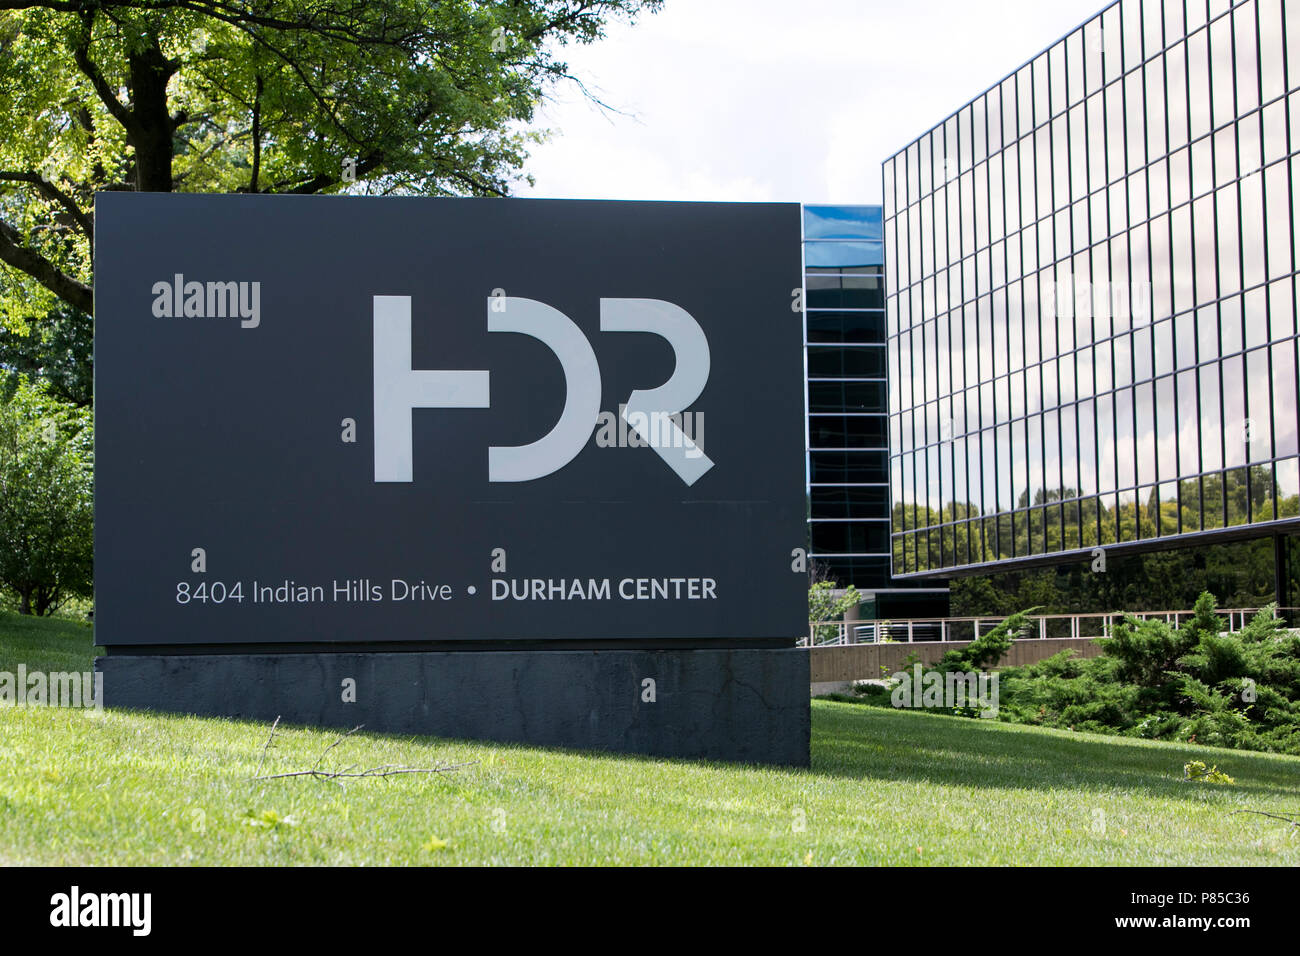 Un logo affiche à l'extérieur du siège de l'HDR, Inc., à Omaha, Nebraska, le 1 juillet 2018. Banque D'Images